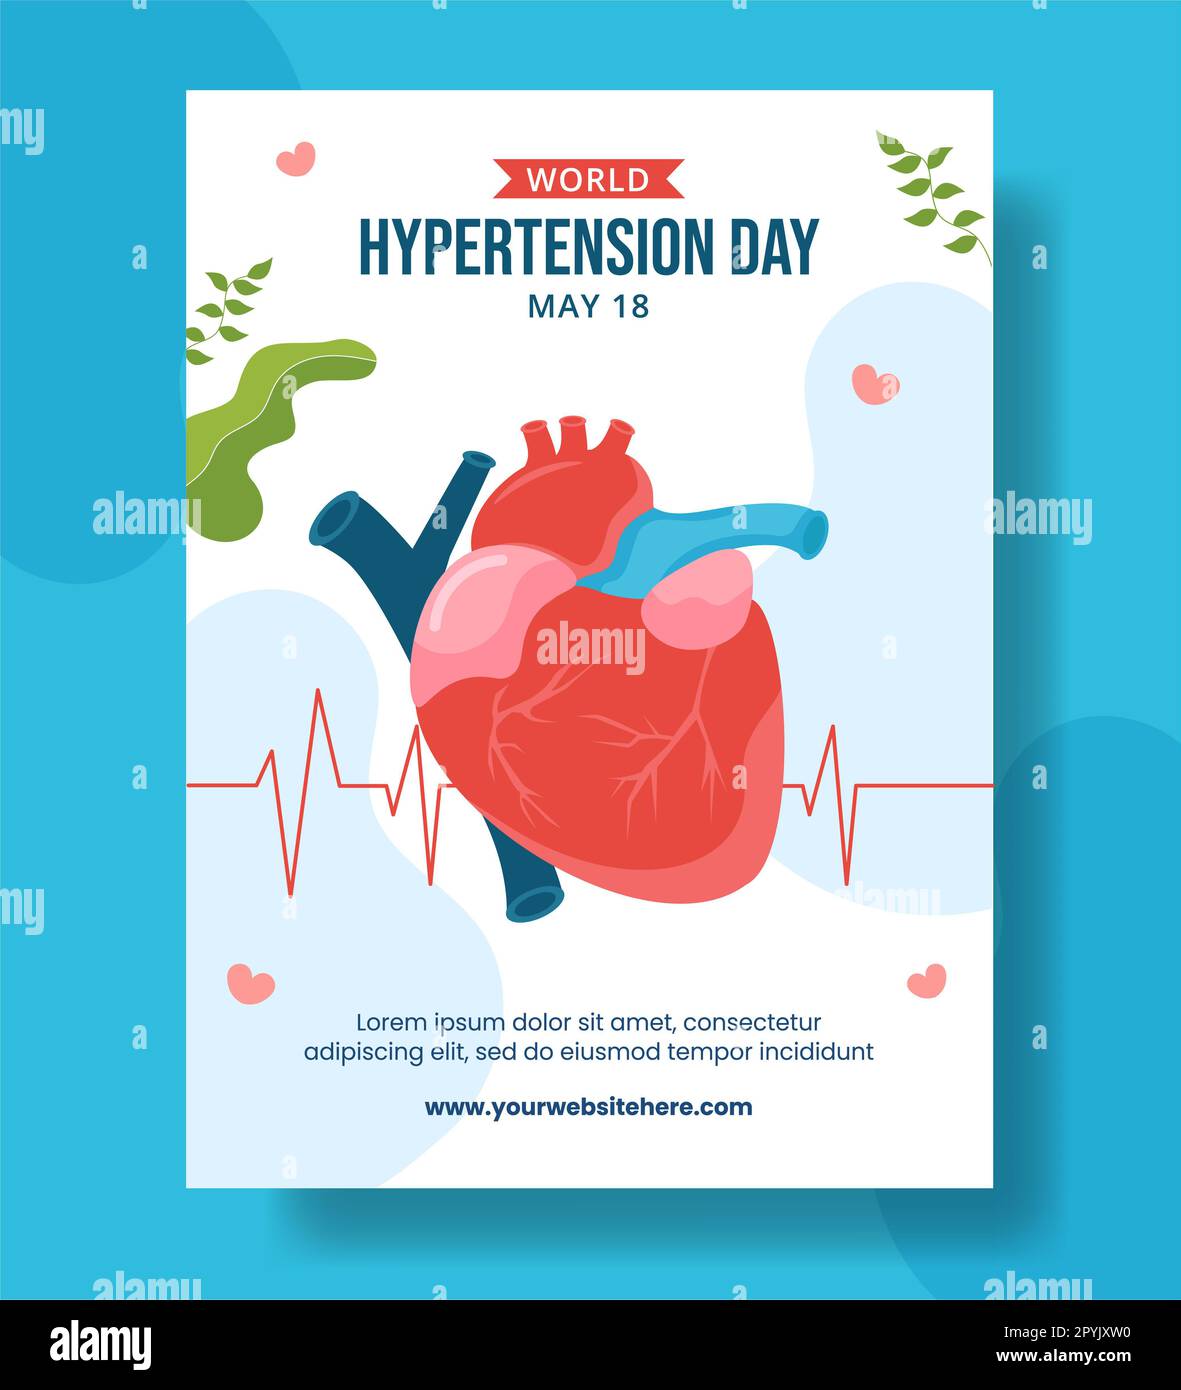 Journée mondiale de l'hypertension artérielle affiche verticale dessin animé à la main modèles Illustration d'arrière-plan Banque D'Images